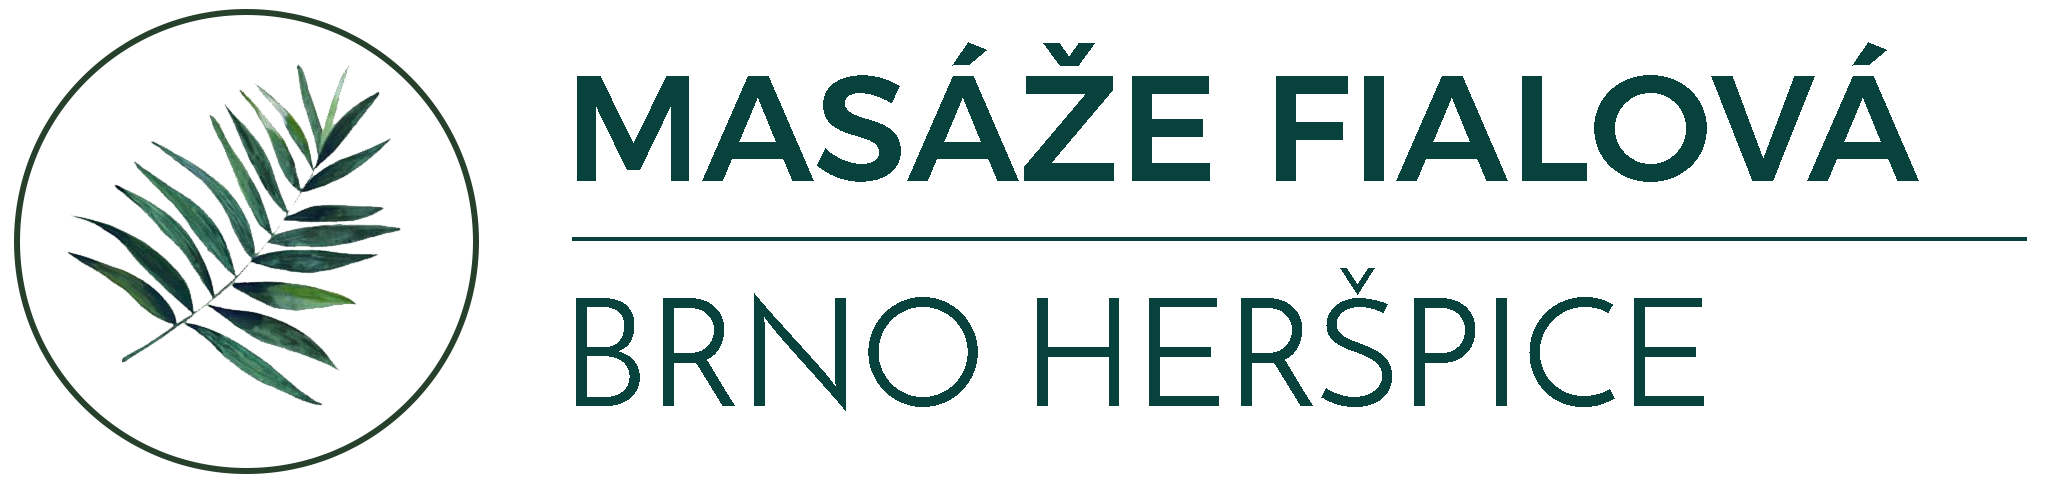 masaze-fialova-logo-big.png